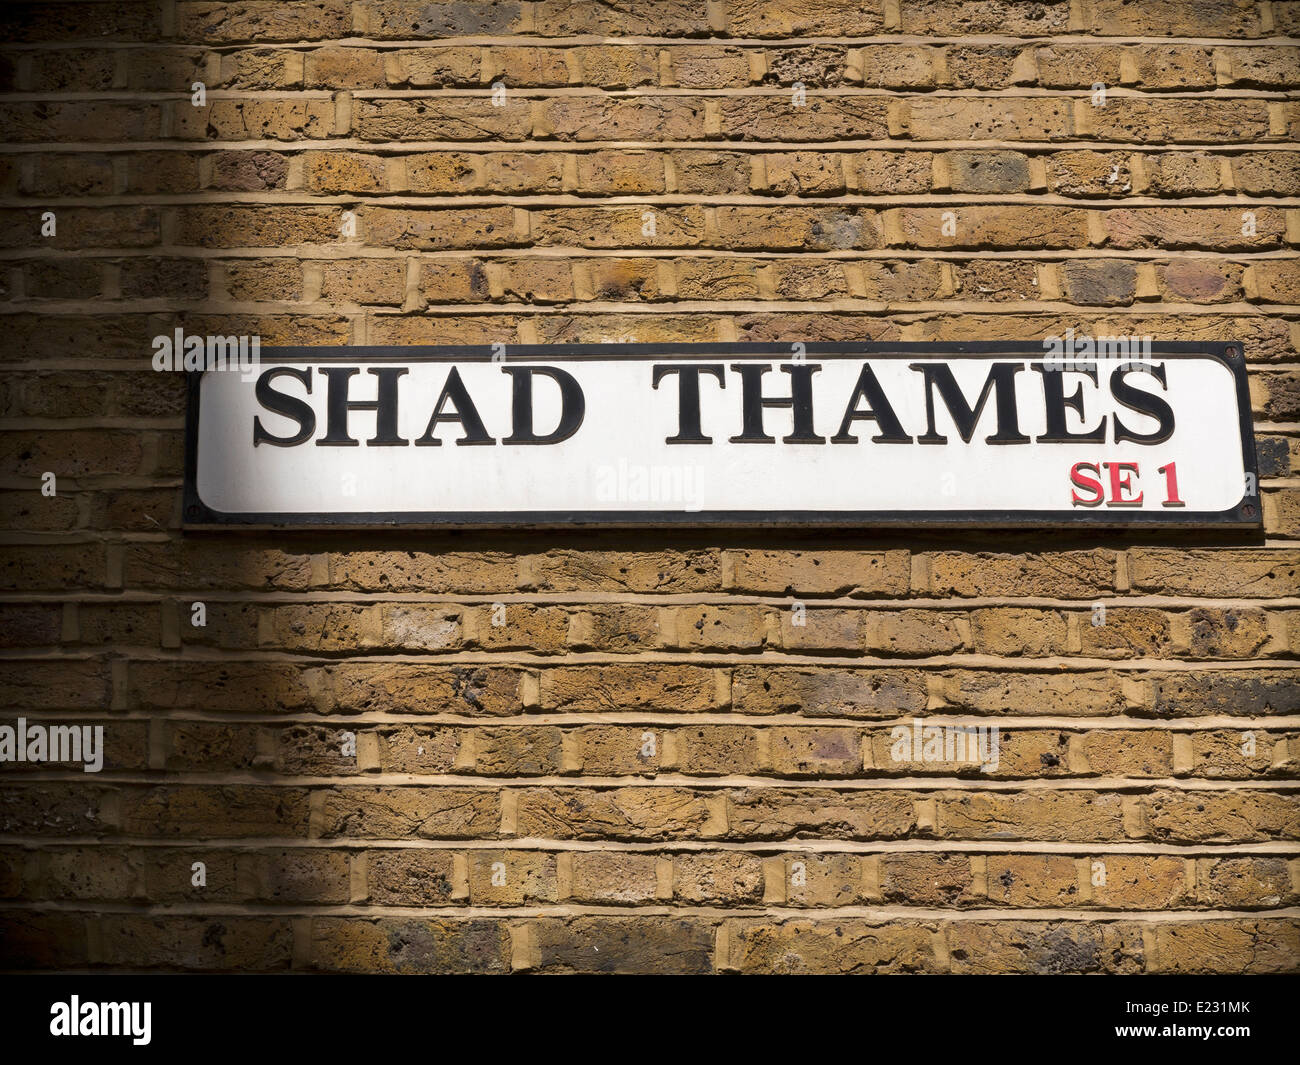 Shad Thames SE 1 cartello stradale contro un muro di mattoni Foto Stock